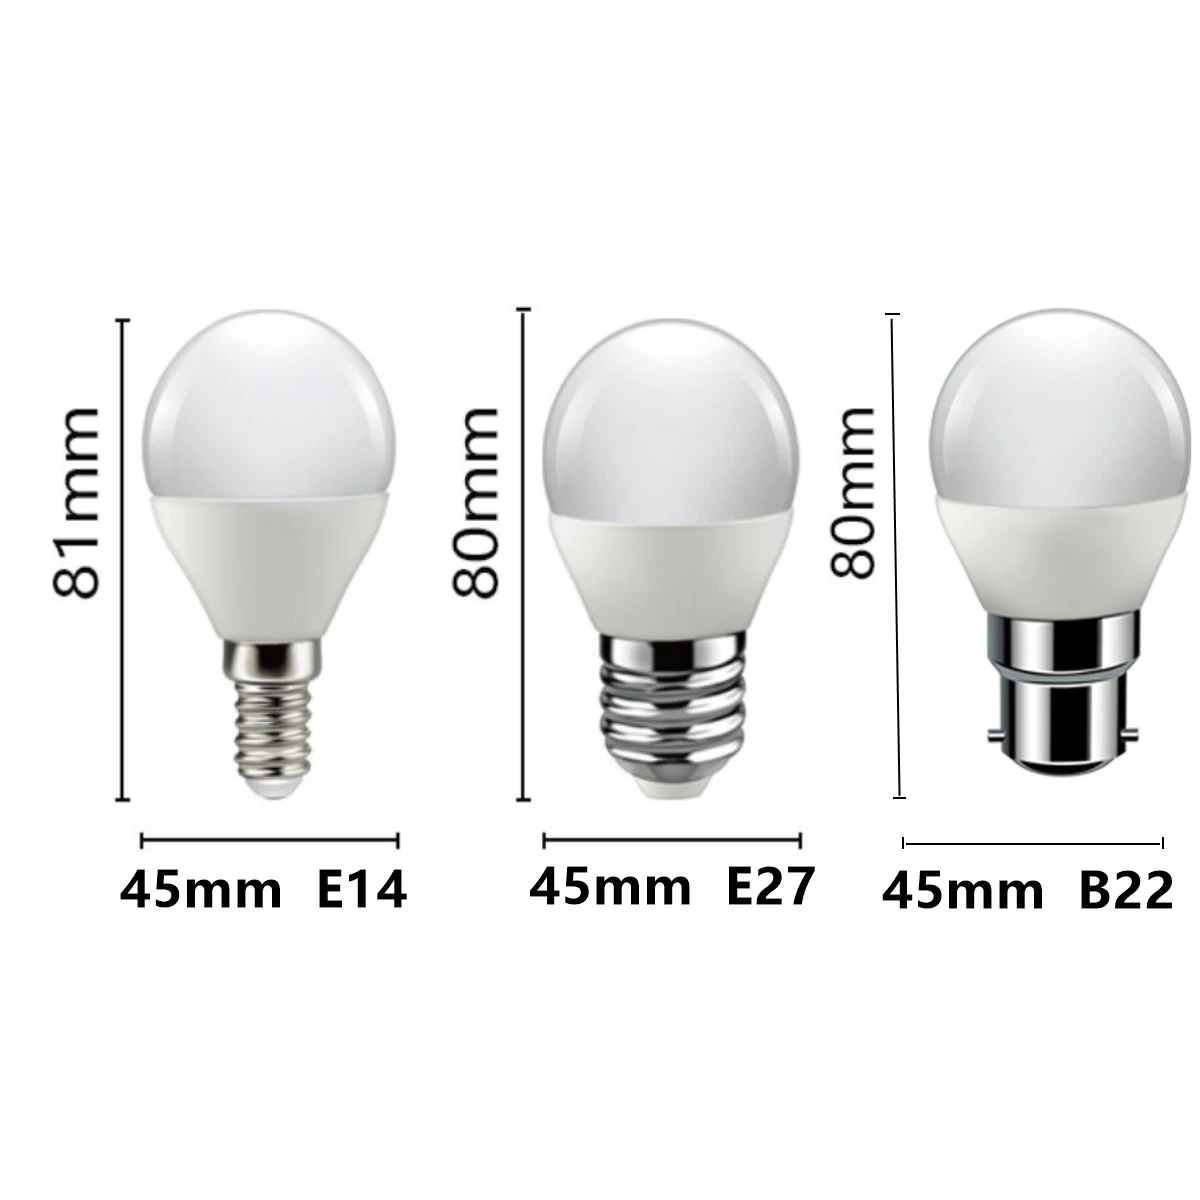 RZL LED Lights 6pcs/ lot LED E27 Ampoule LED 3W 6W 9W 12W 15W 18W Lampe LED  Ampoule 220 V 240 V E27 économie d' énergie Ampoule Ampoule (Couleur 